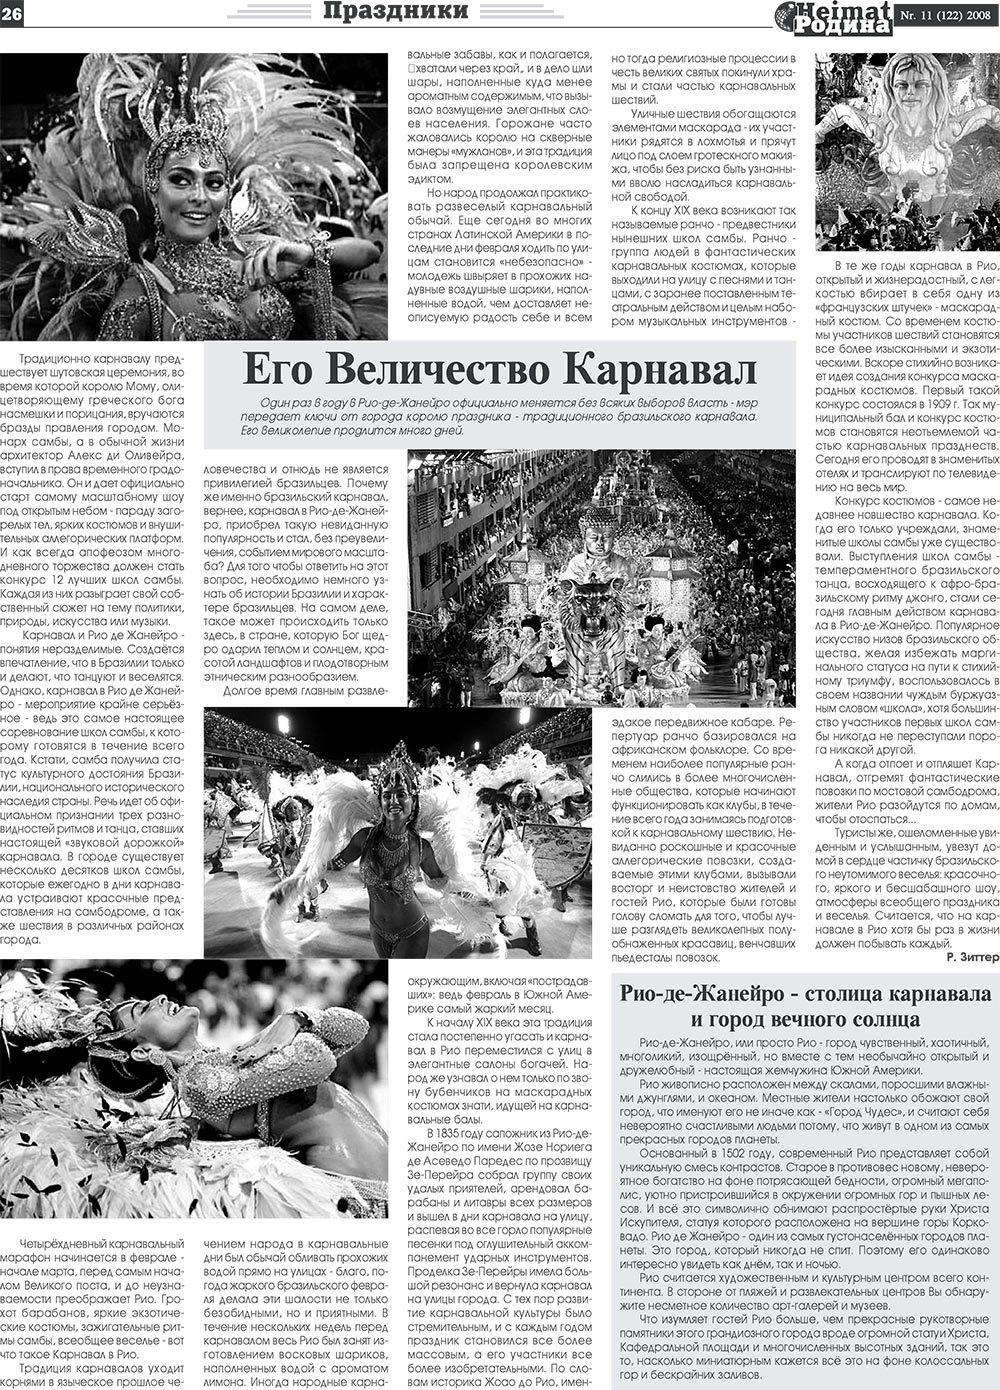 Heimat-Родина (газета). 2008 год, номер 11, стр. 26